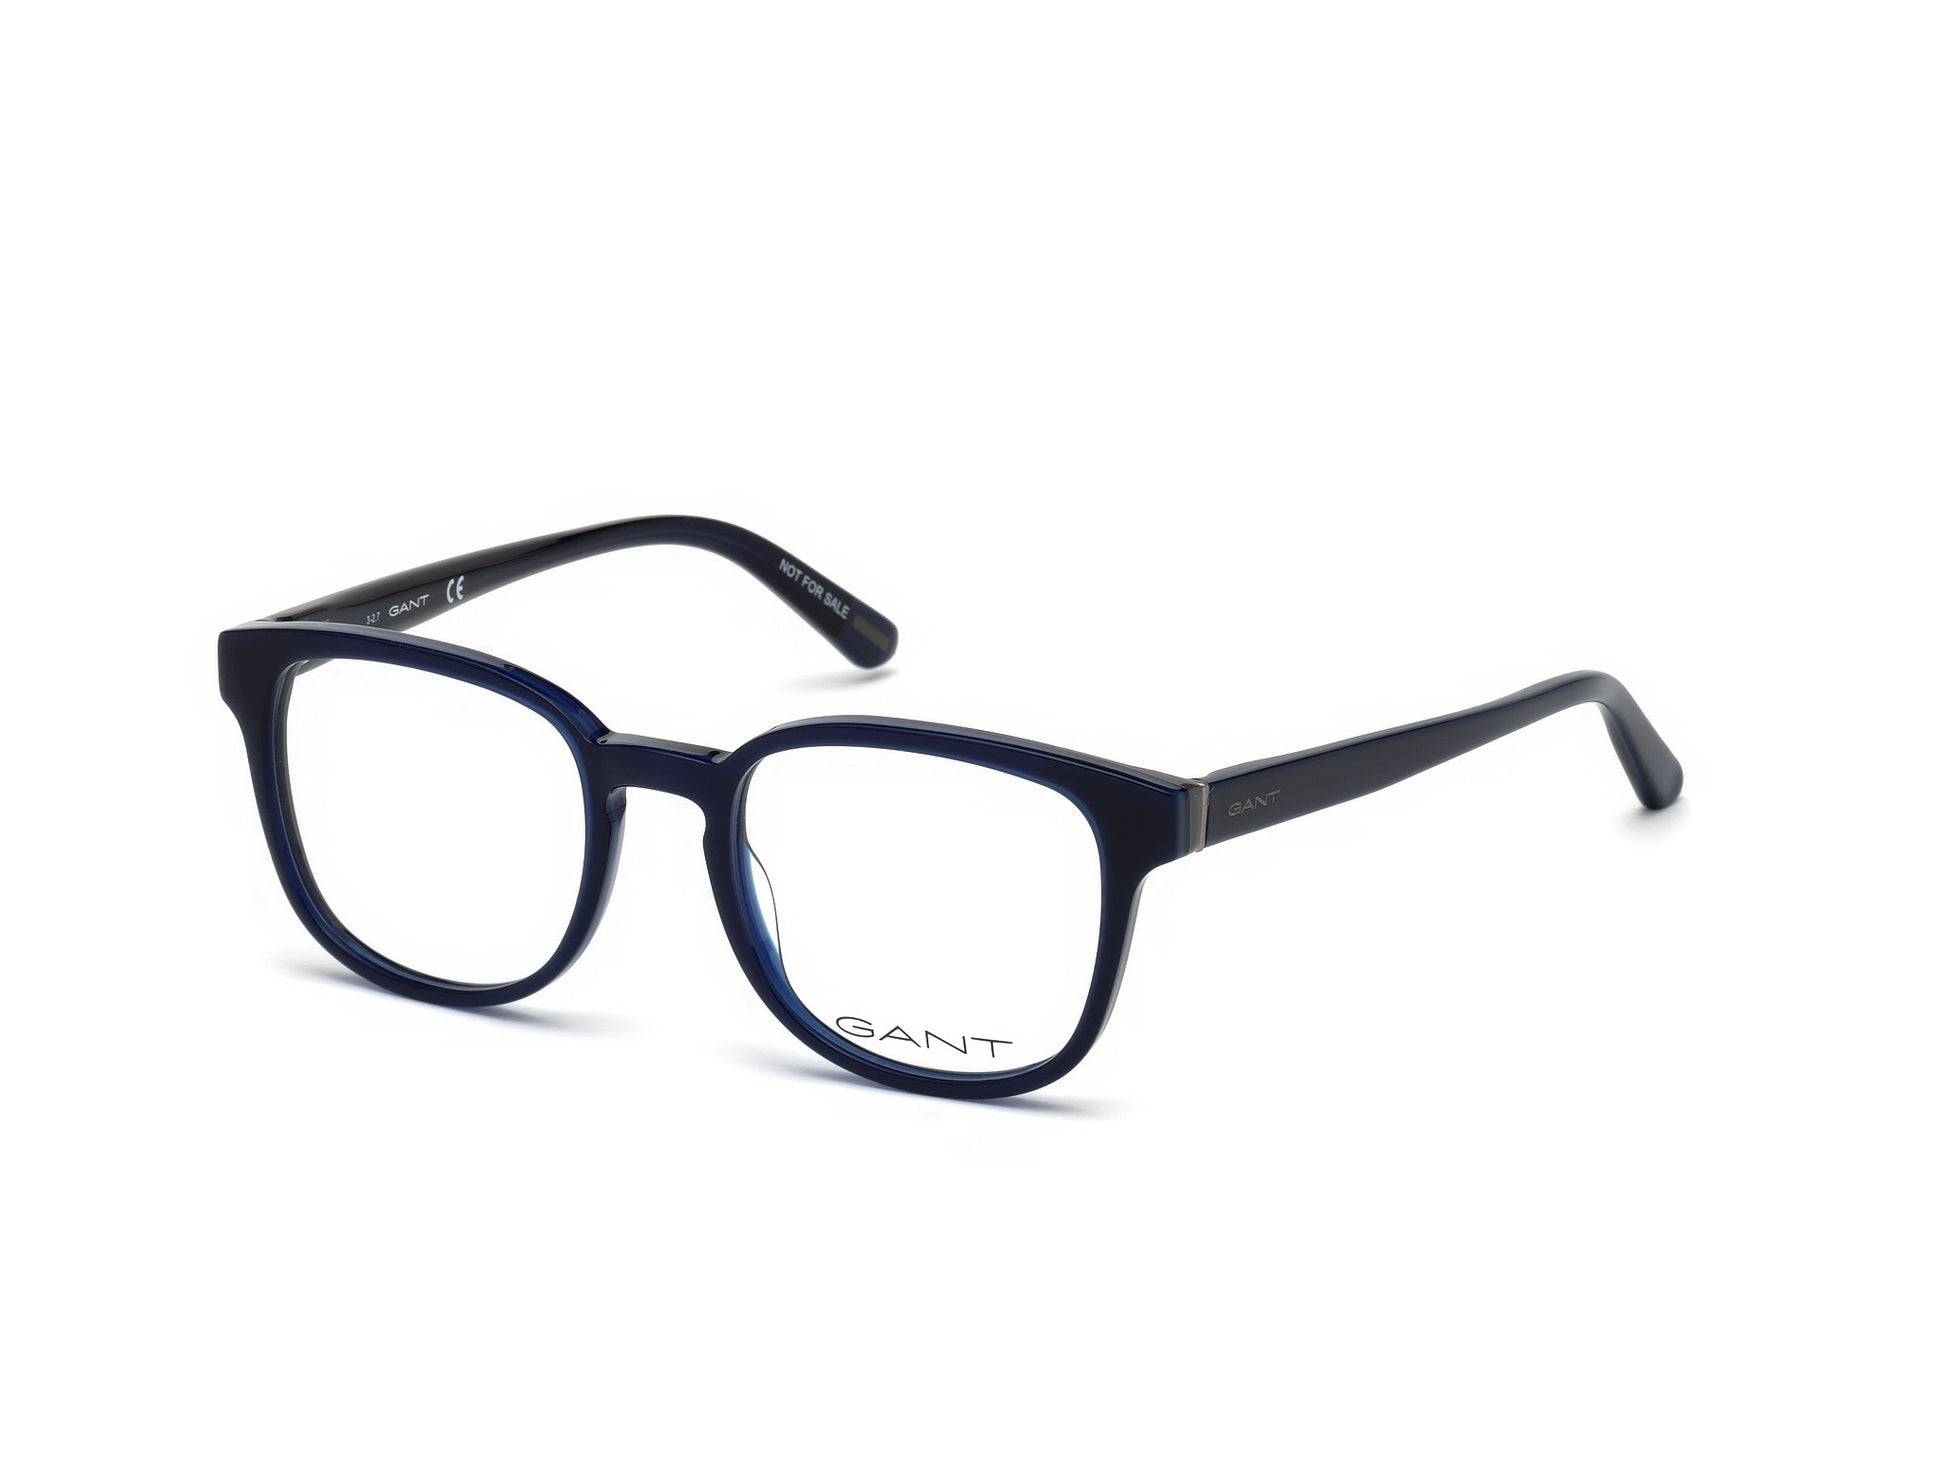 Gant GA3175 Round Eyeglasses 090-090 - Shiny Blue